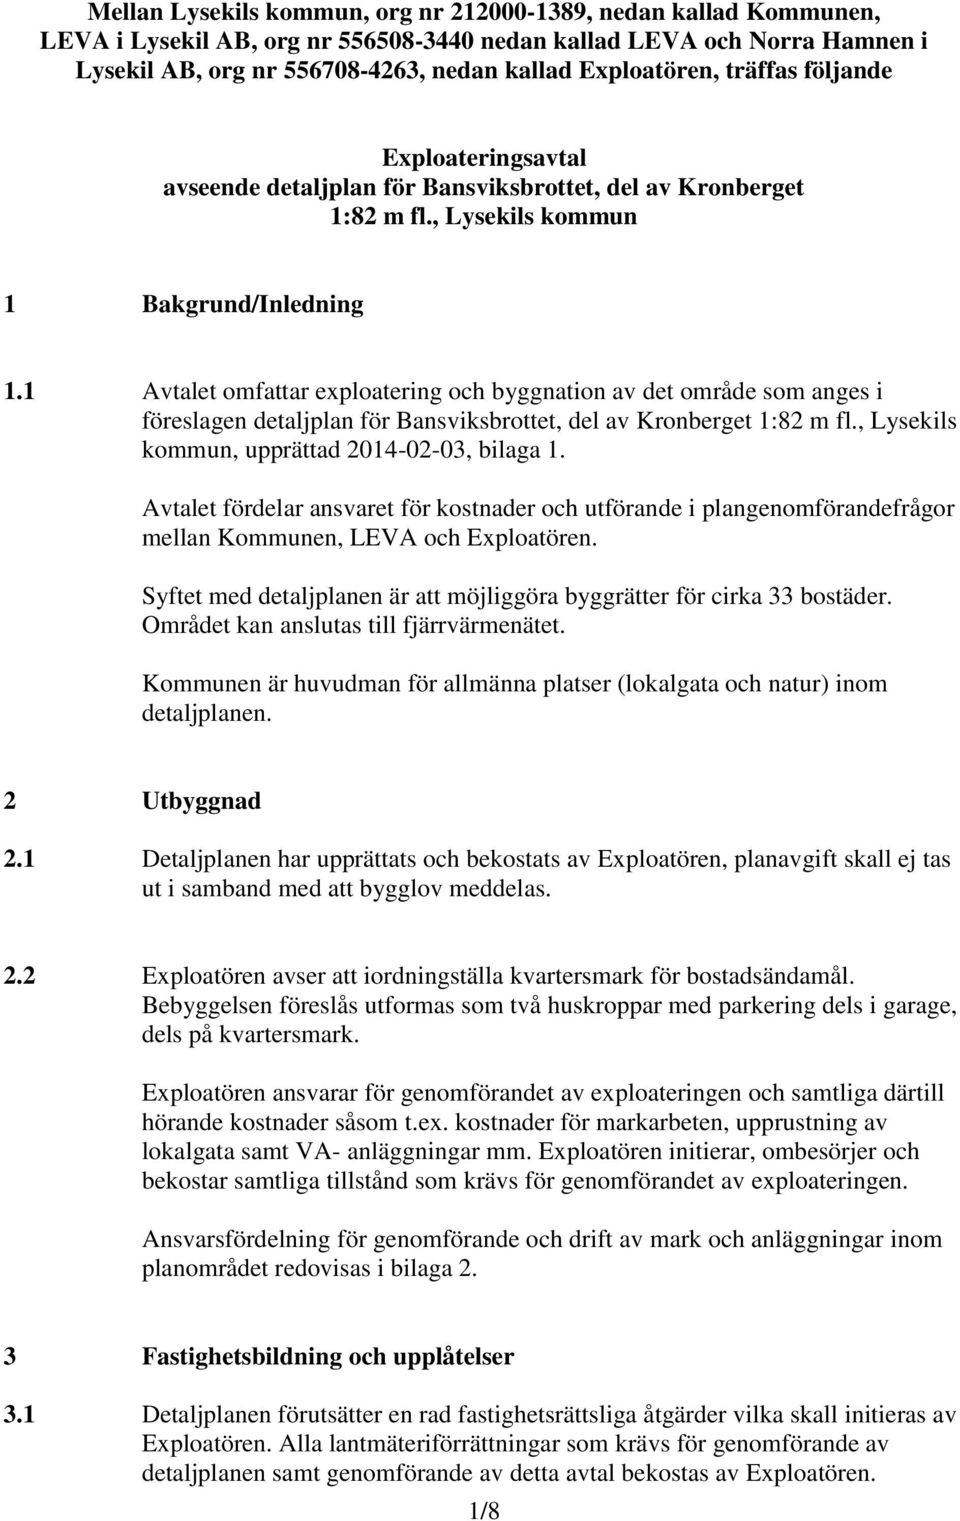 1 Avtalet omfattar exploatering och byggnation av det område som anges i föreslagen detaljplan för Bansviksbrottet, del av Kronberget 1:82 m fl., Lysekils kommun, upprättad 2014-02-03, bilaga 1.